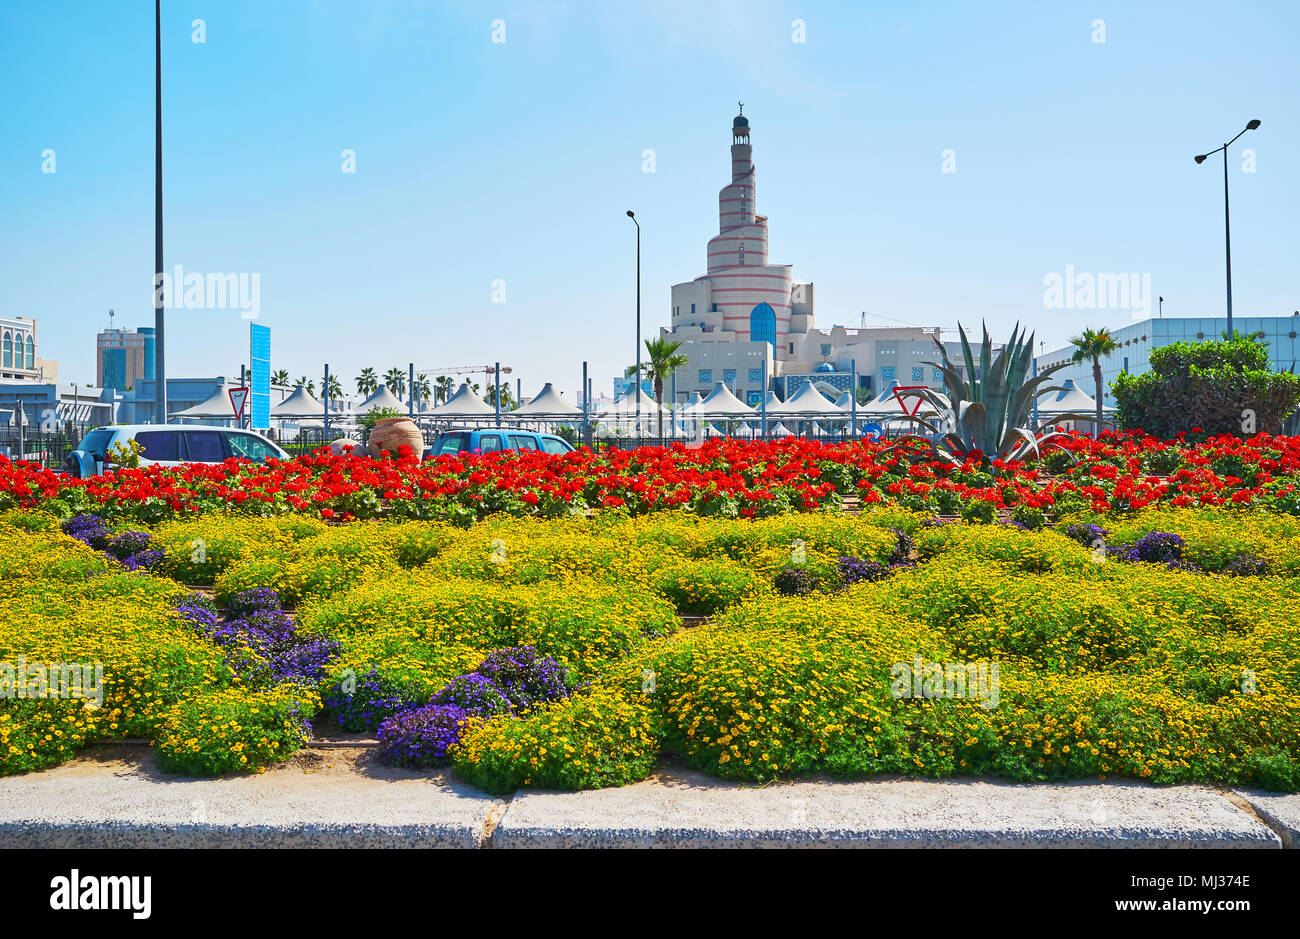 La Scenic 5 posti letti di fiori in Corniche promenade con spirale Moschea, famosa anche come Al Fanar, sullo sfondo, Doha, Qatar. Foto Stock